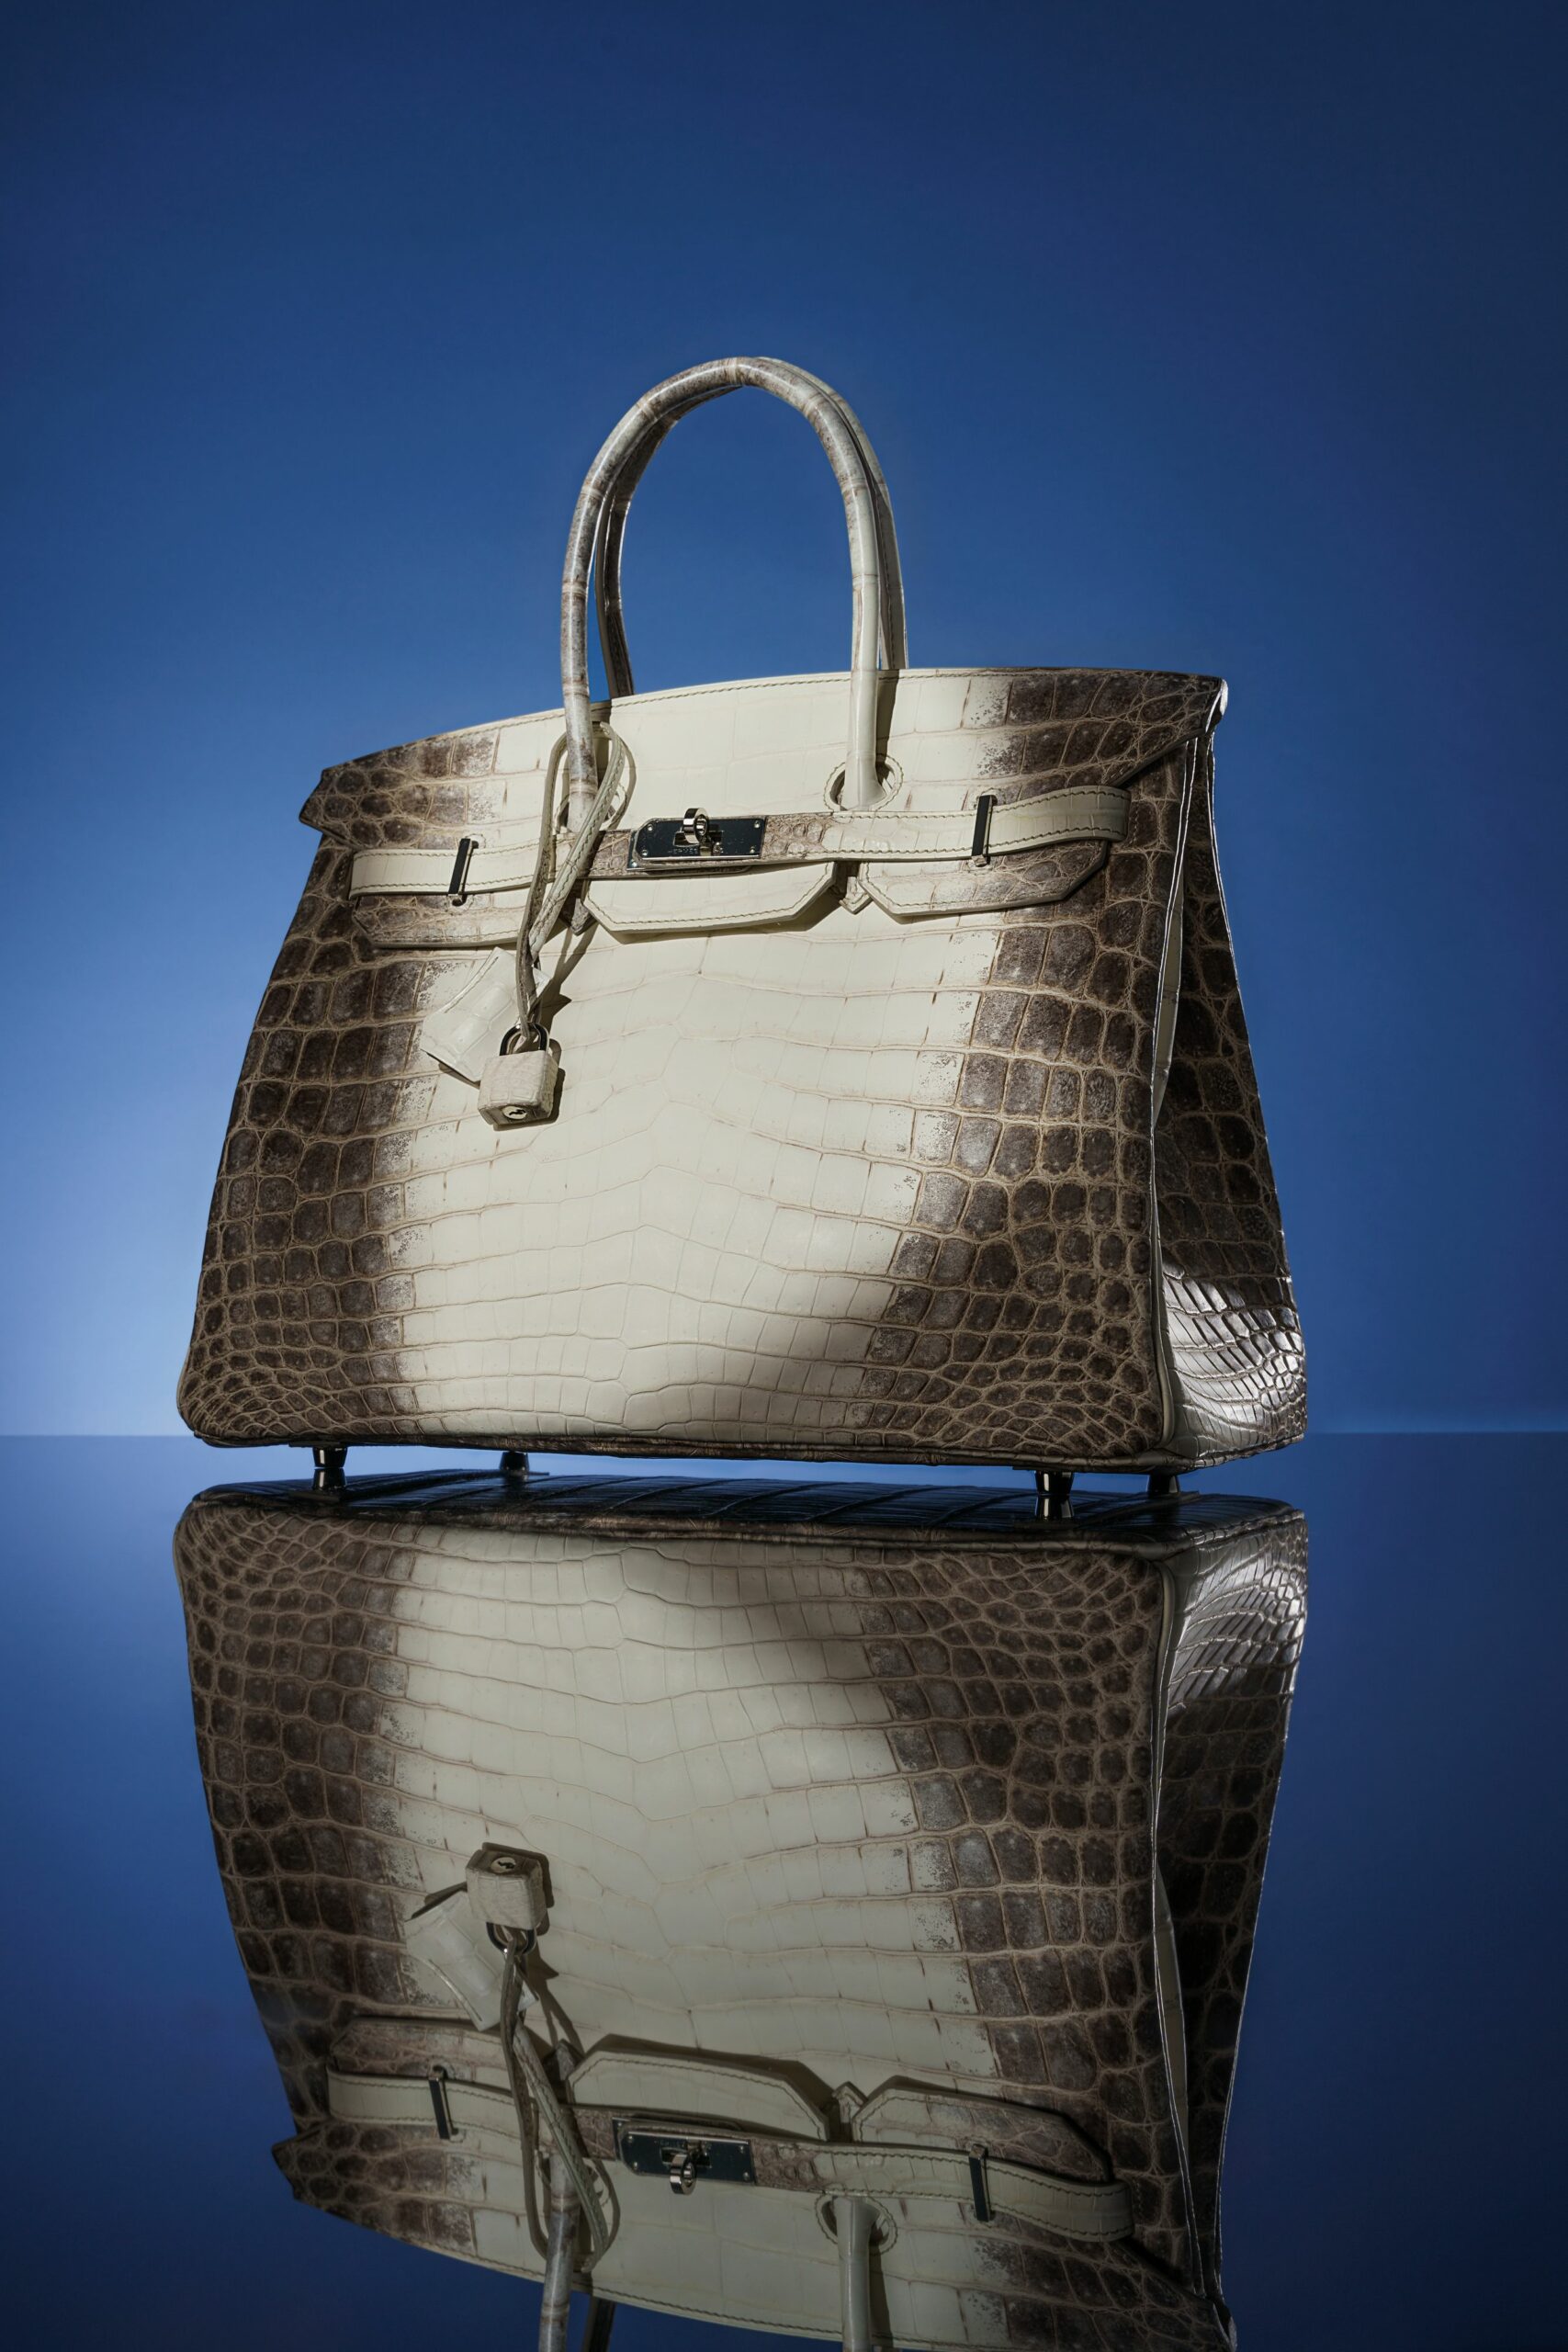 Past auction: Black alligator Hermes clutch purse